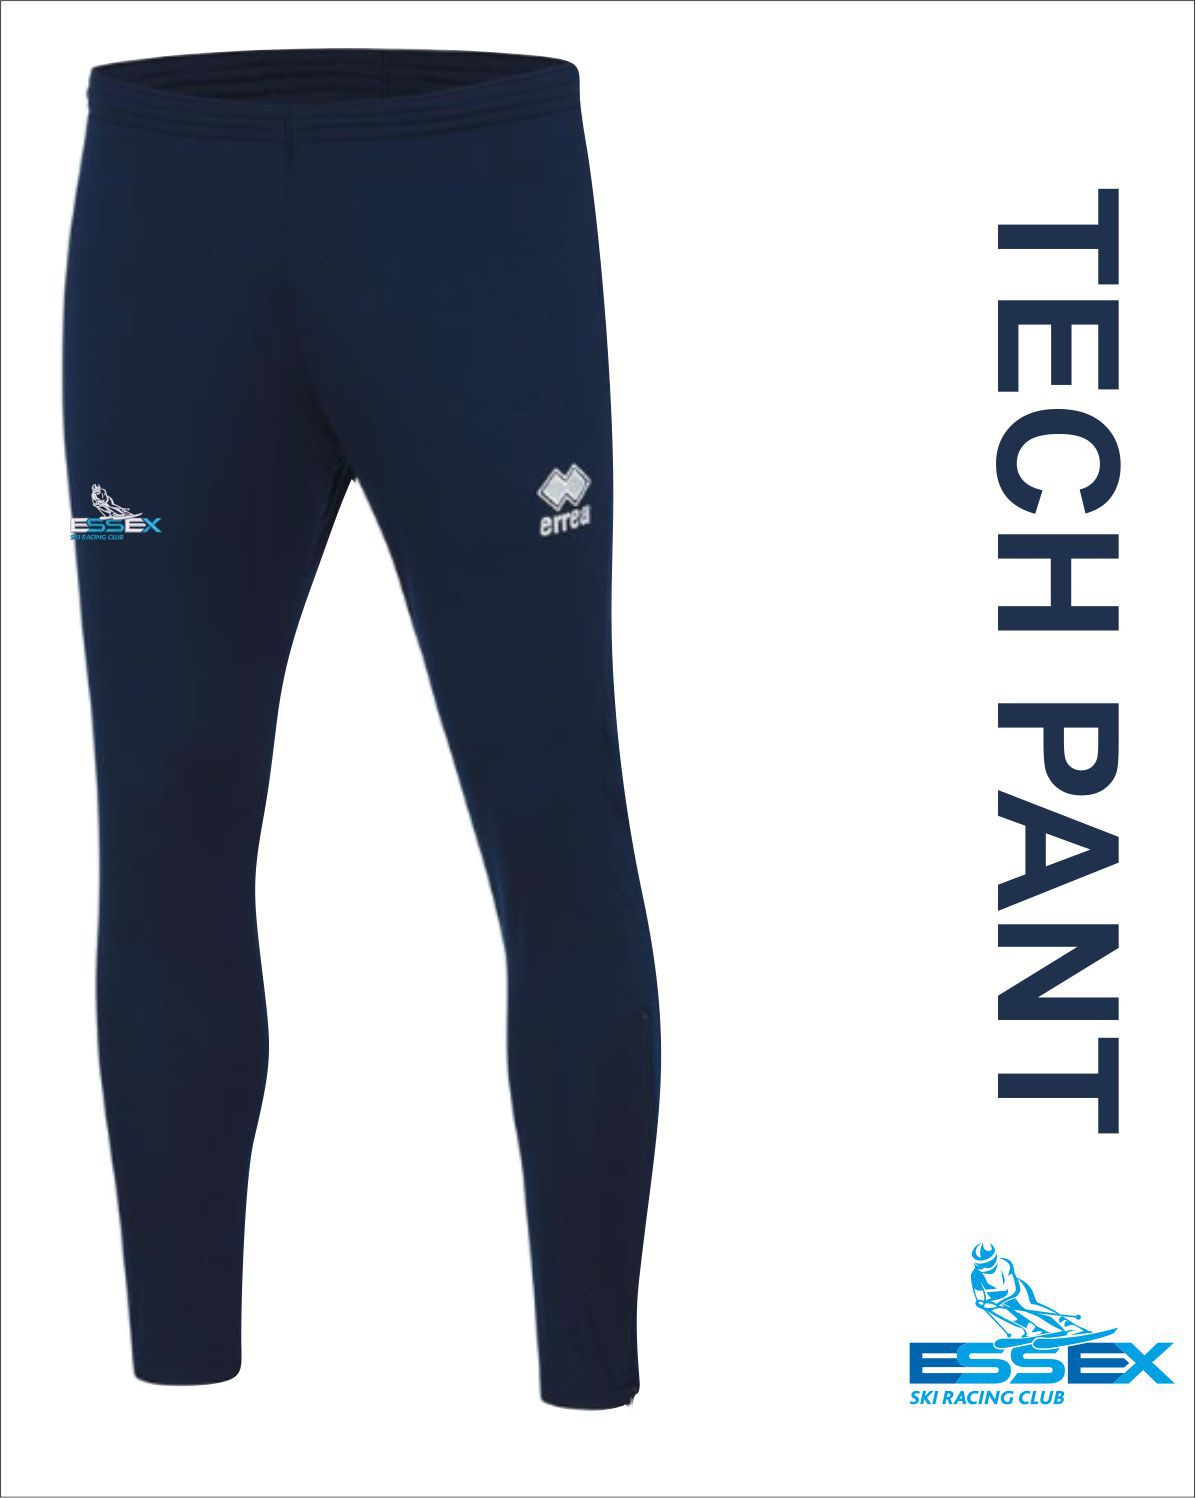 Tech Pants